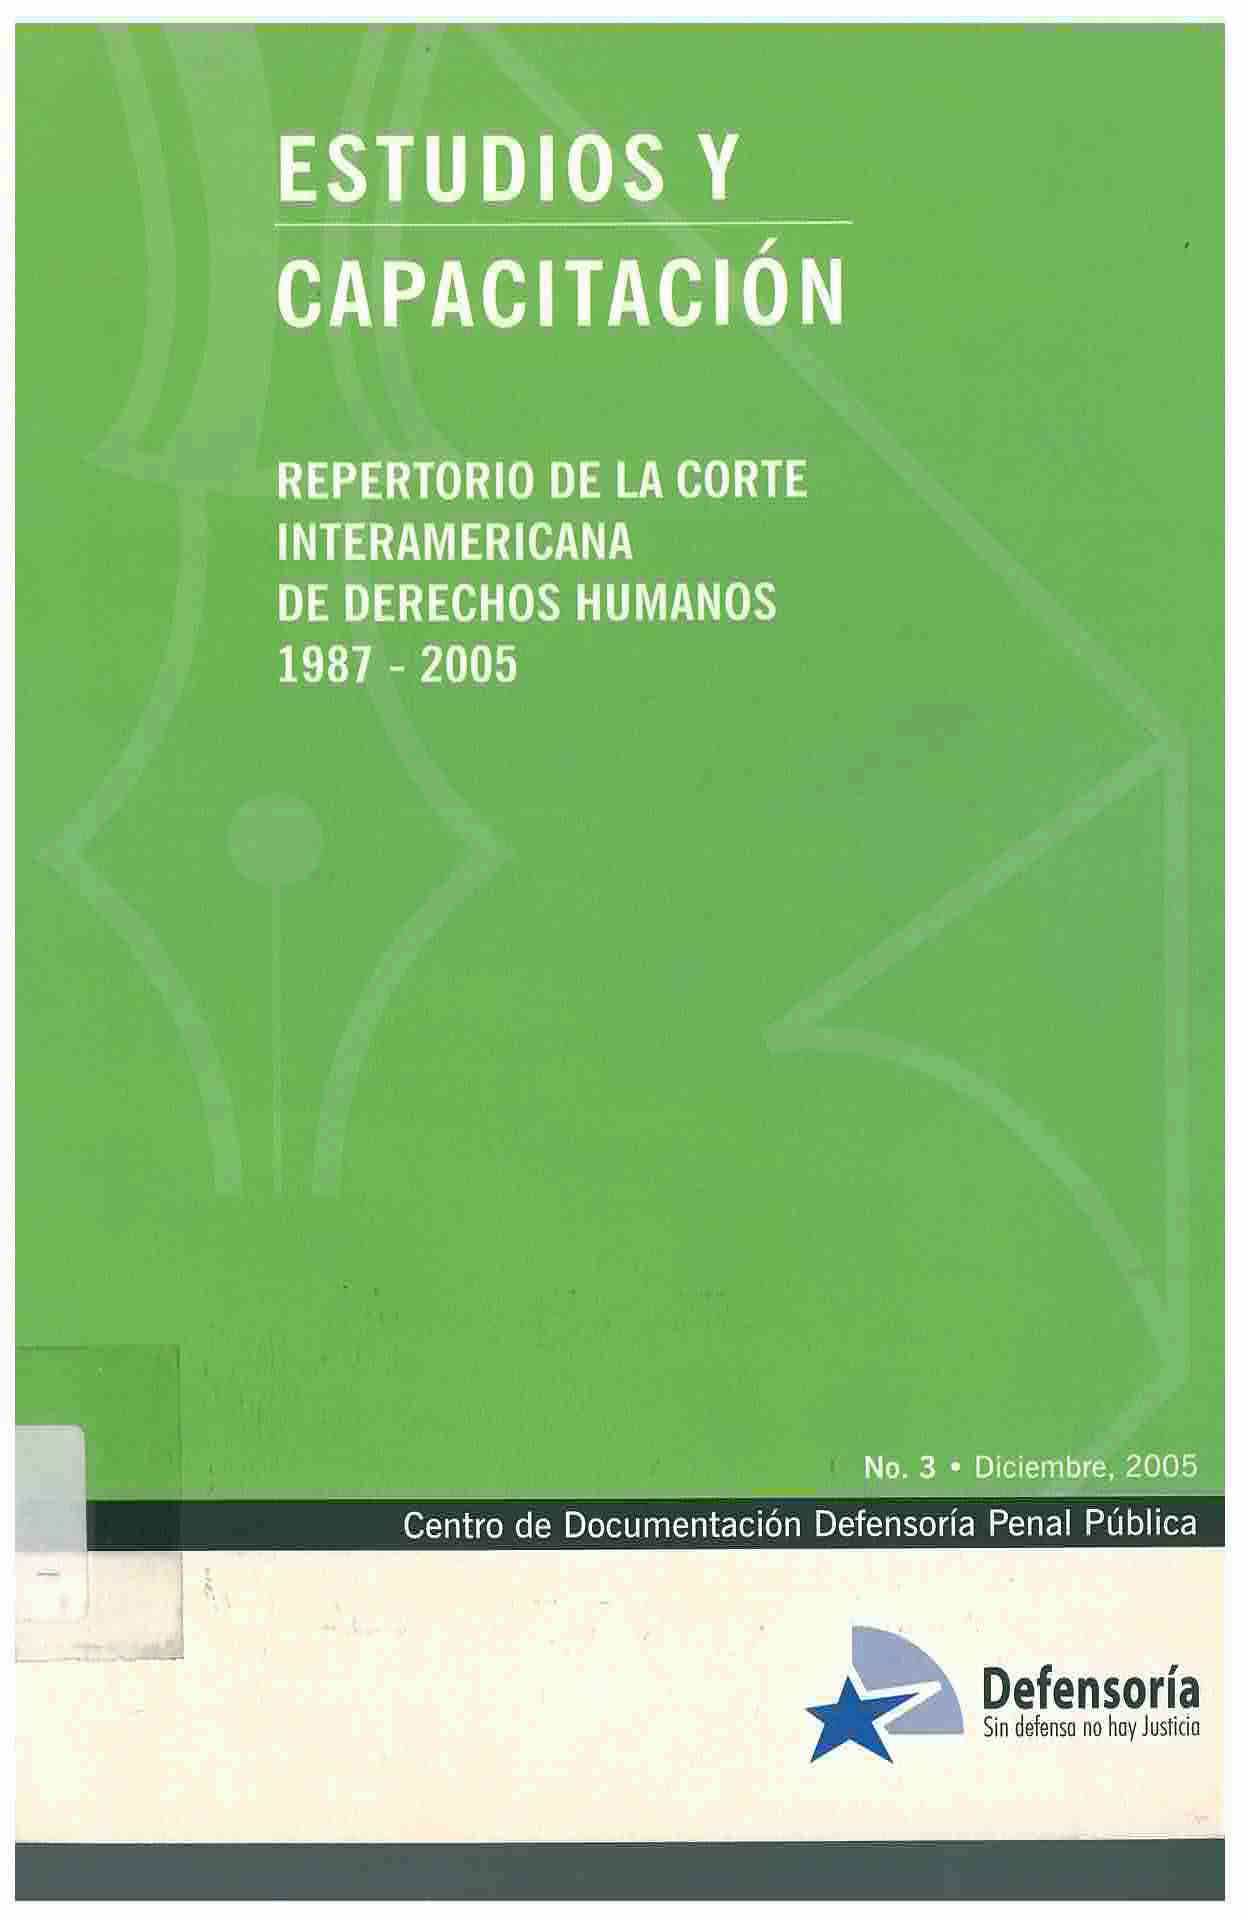 Repertorio de la corte interamericana de derechos humanos 1987-2005